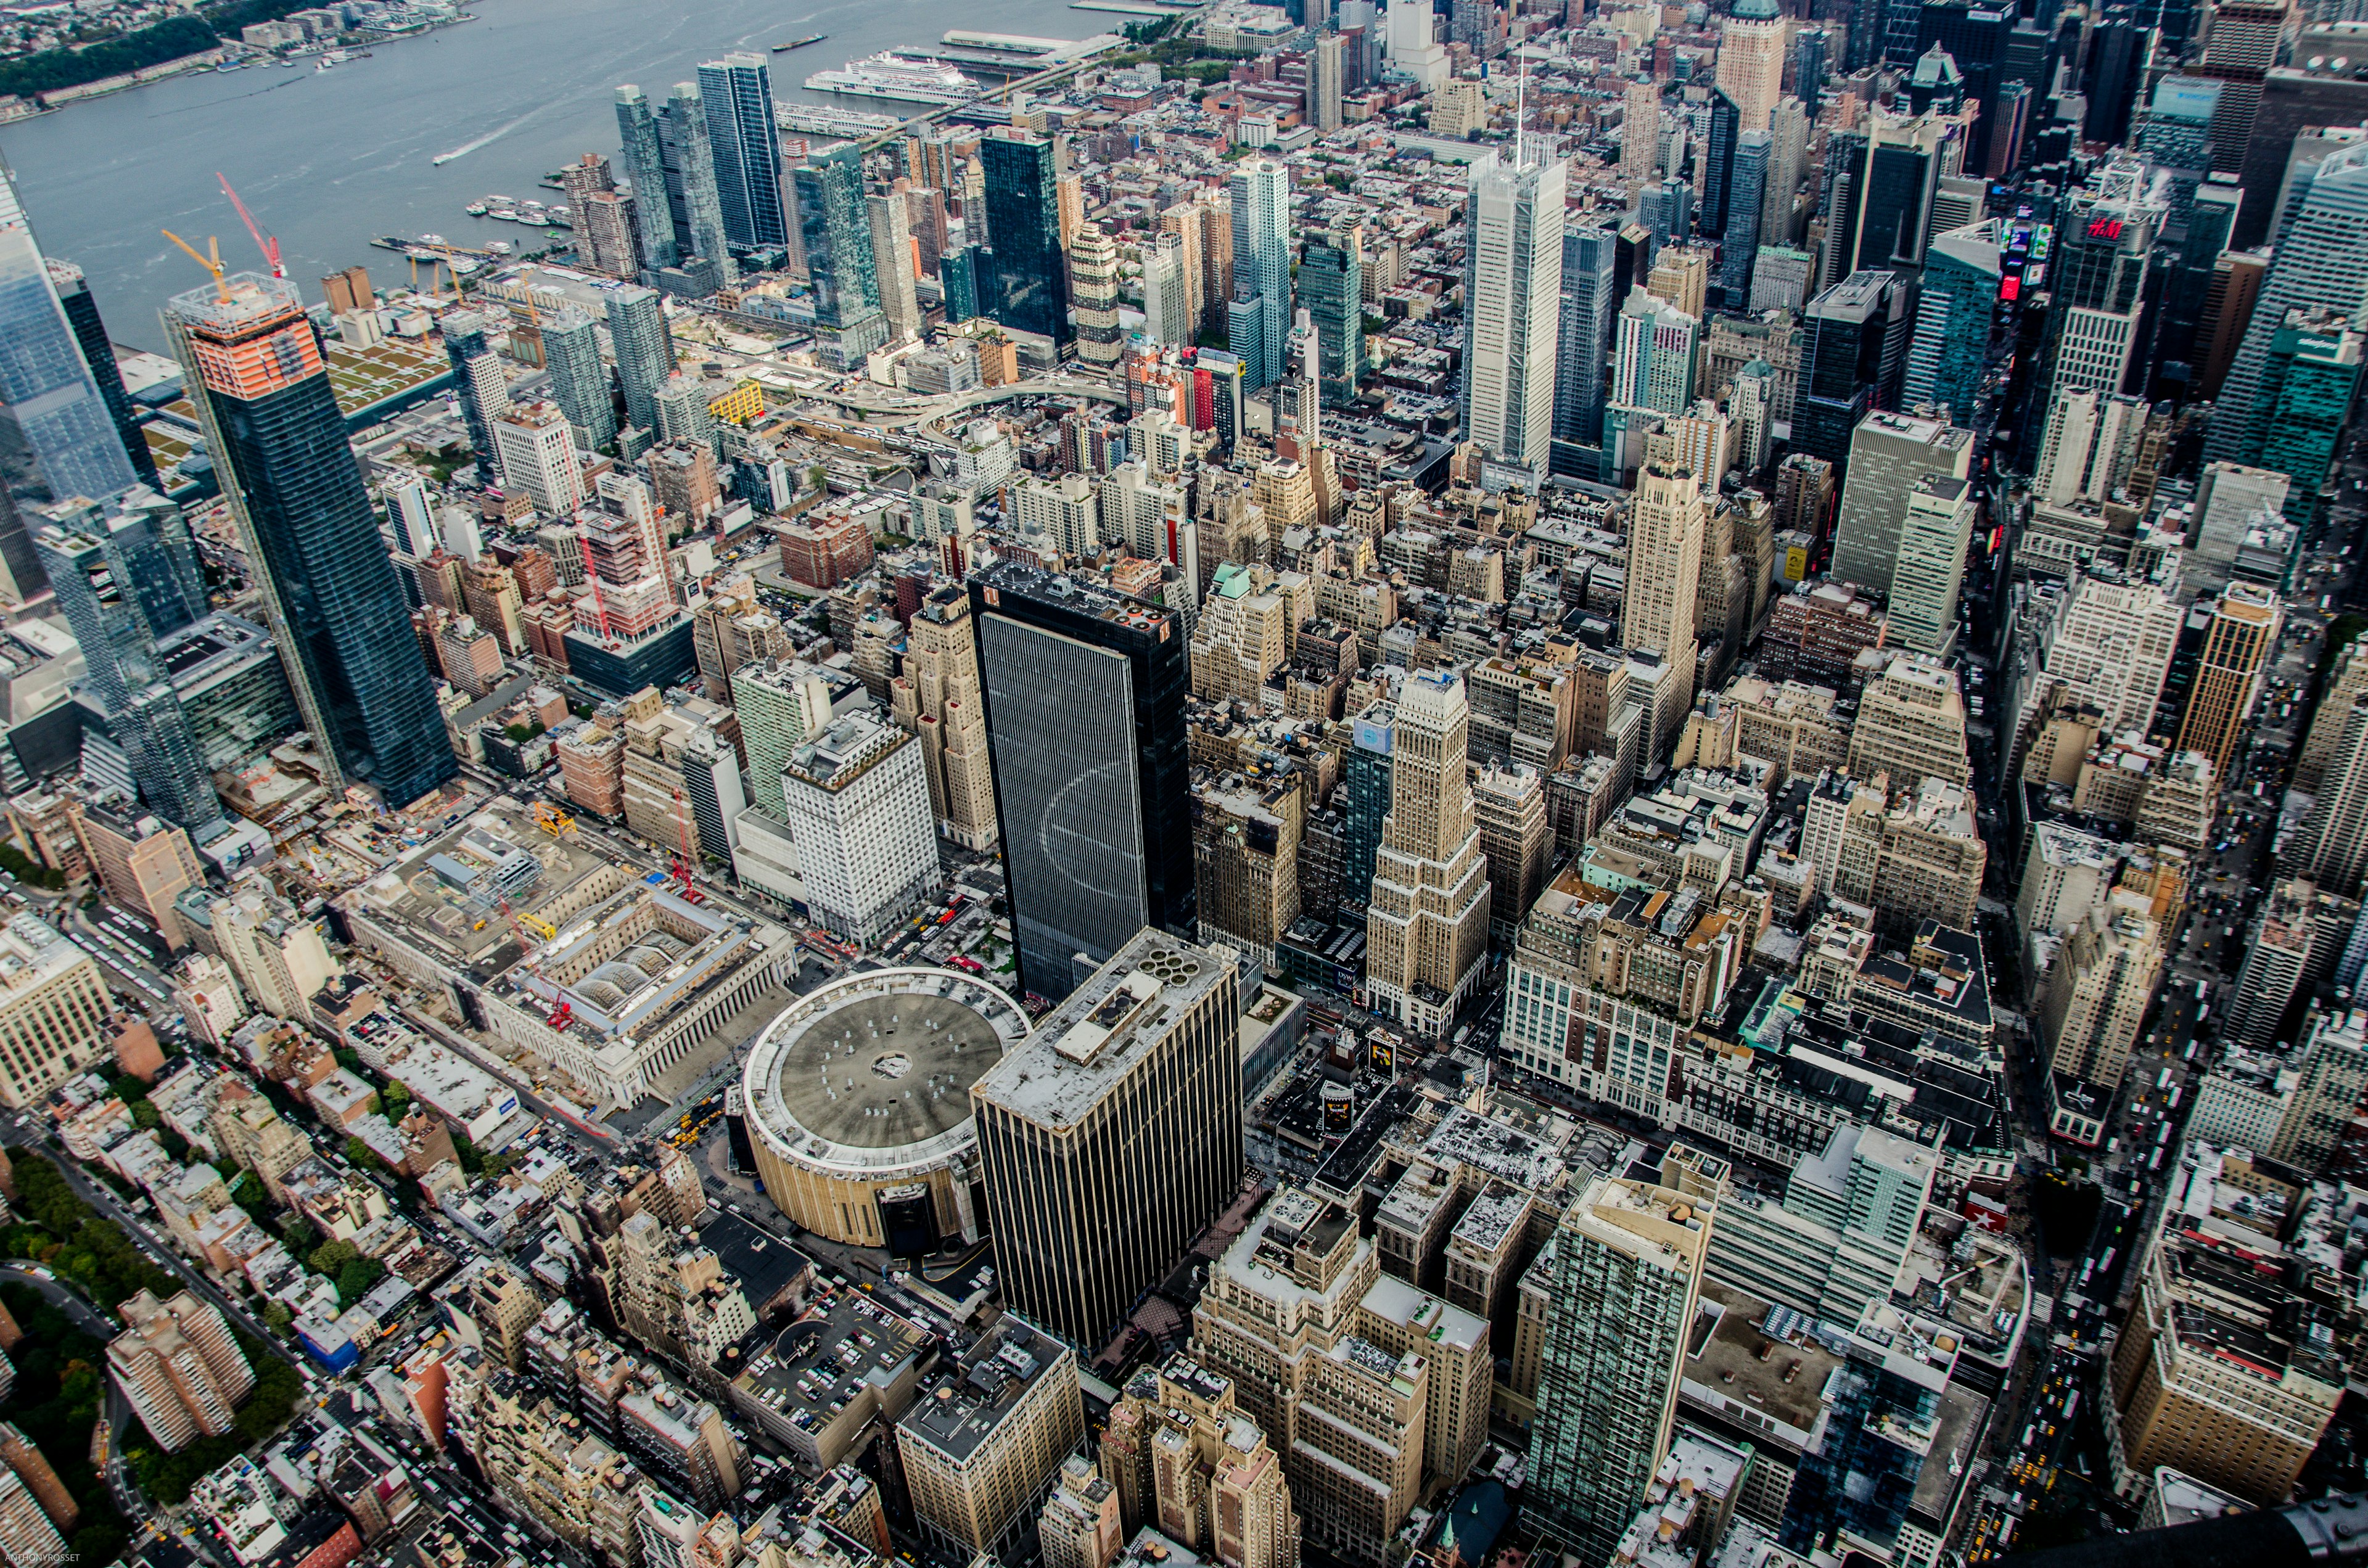 il madison square garden visto dall'alto tra i grattacieli di new york, vedere una partita non può mancare tra le cose da fare a new york